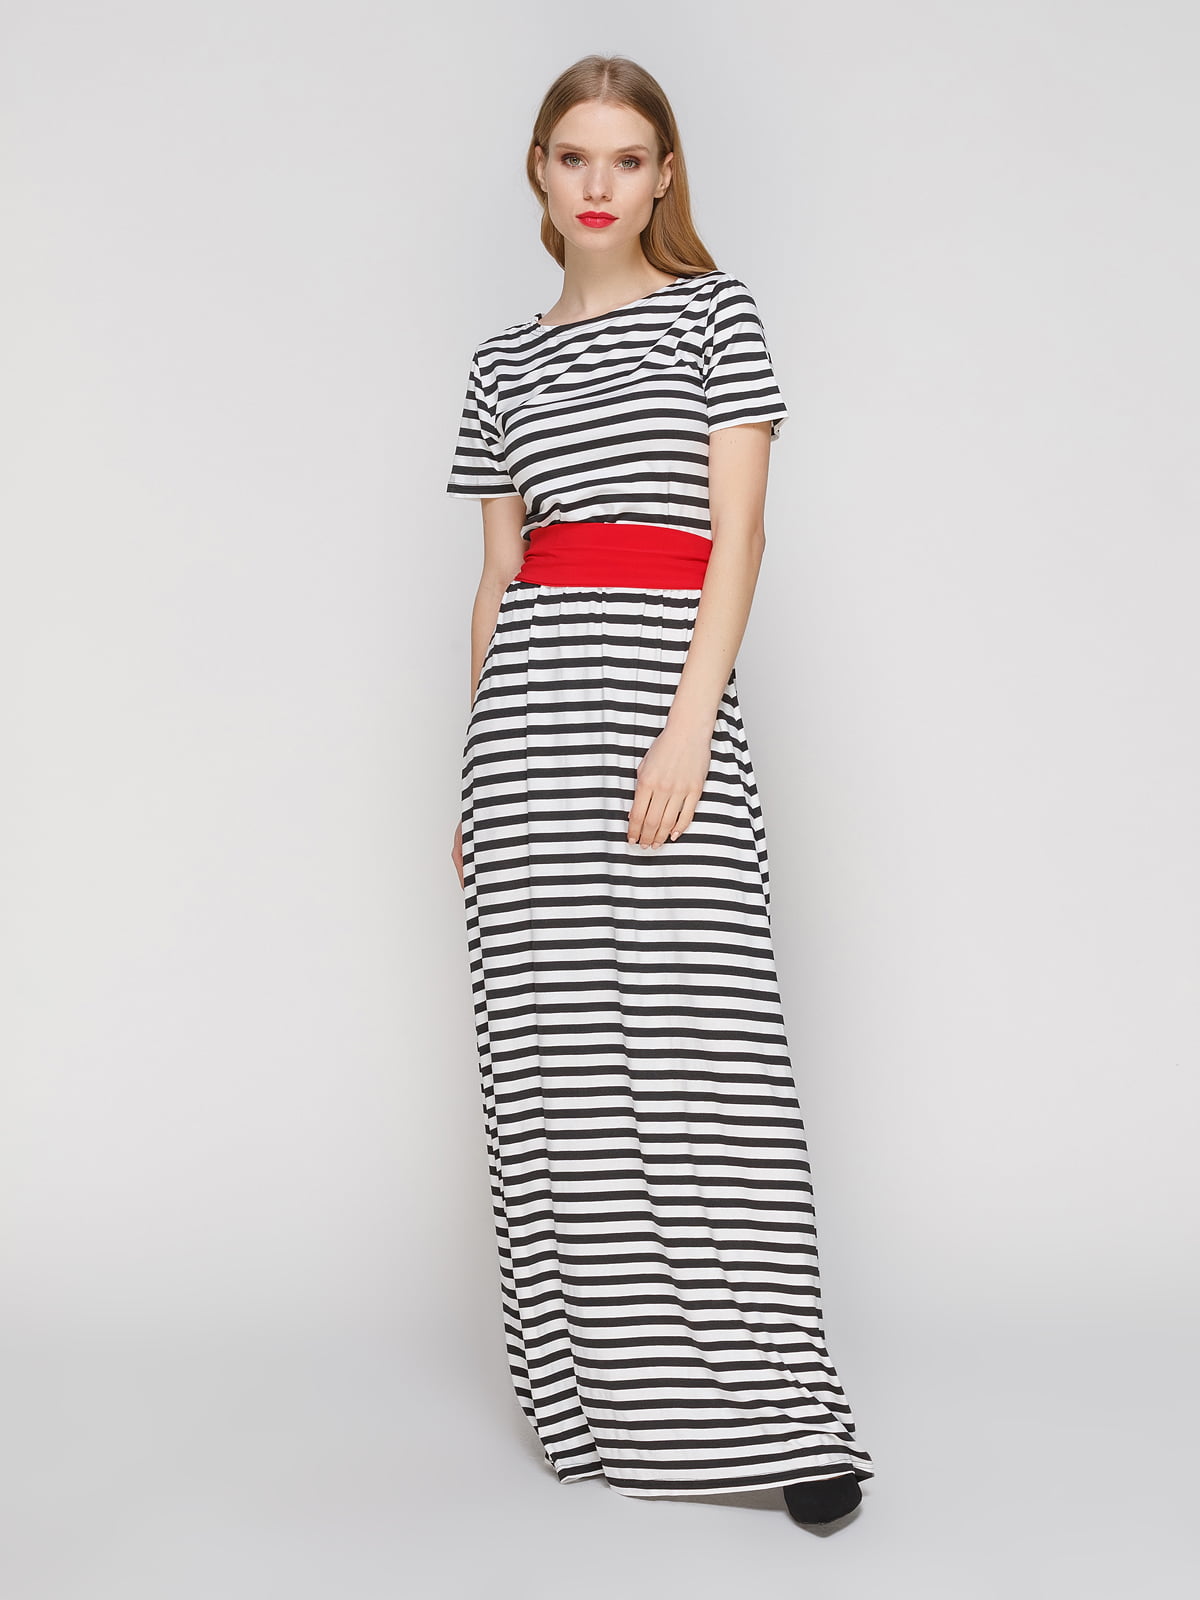 Платье в черно-белую полоску с красным поясом | 3045906